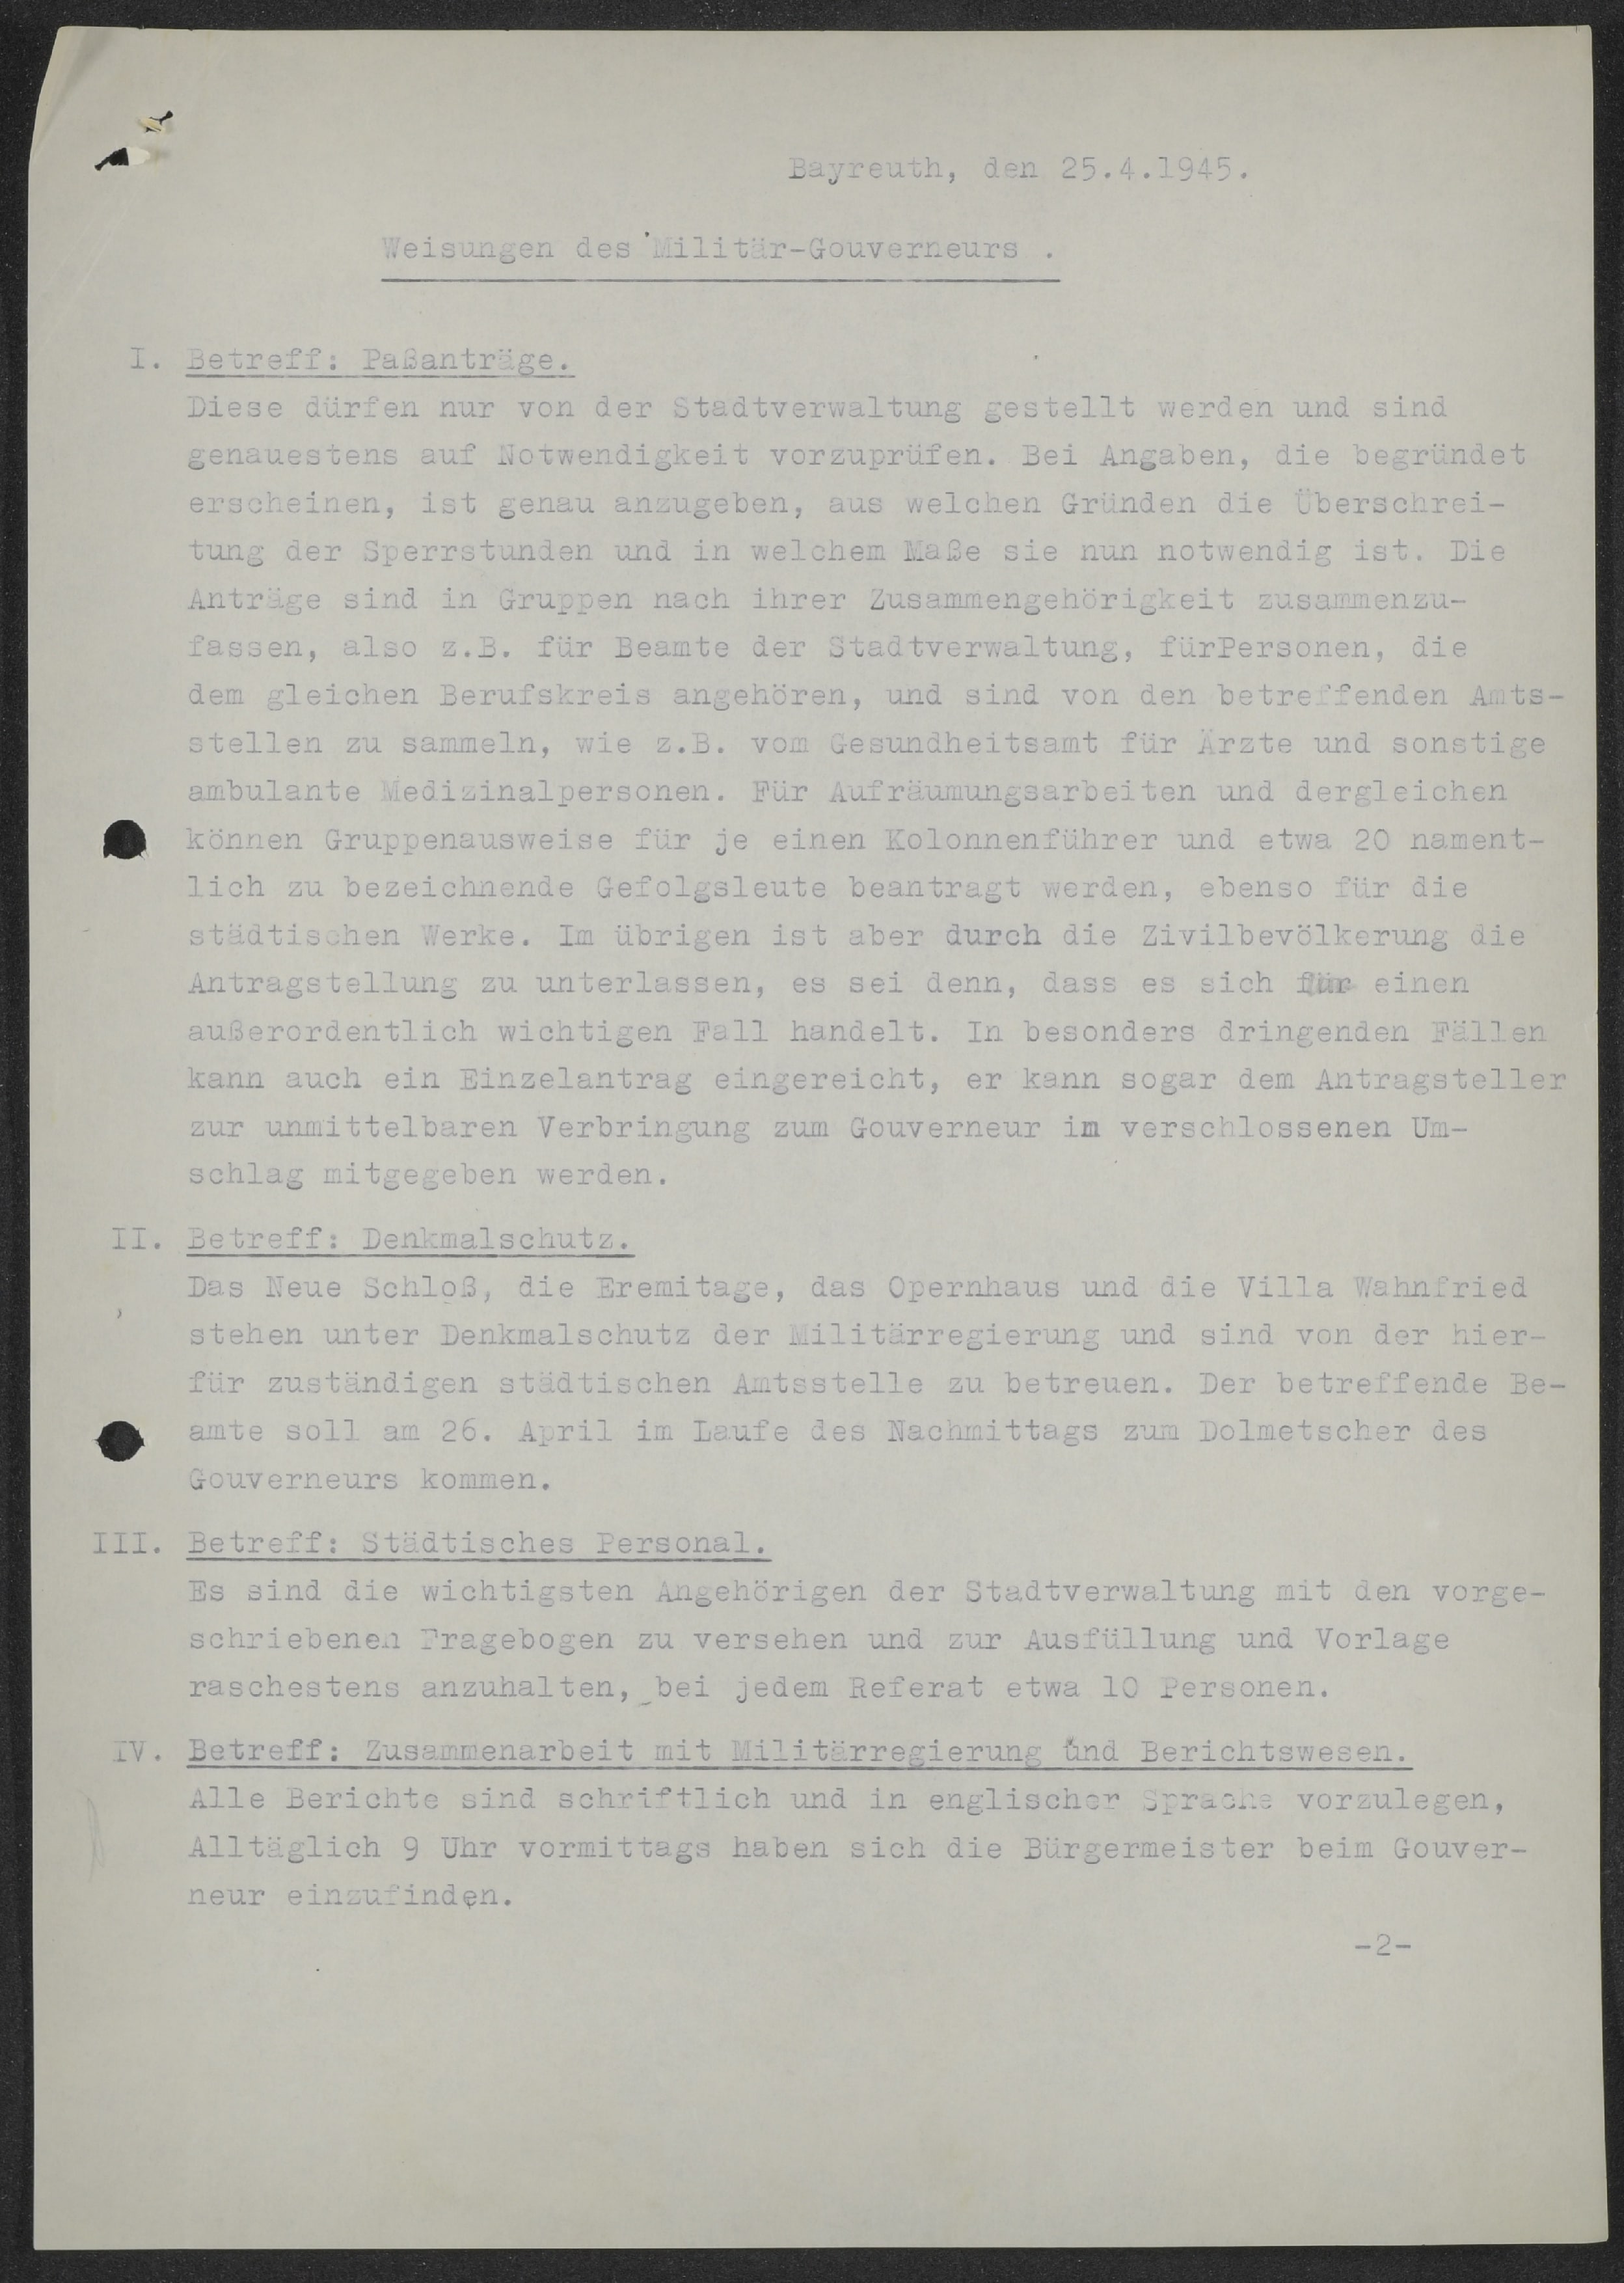 Weisungen der Militärregierung an den Oberbürgermeister der Stadt Bayreuth vom 25.04.1945